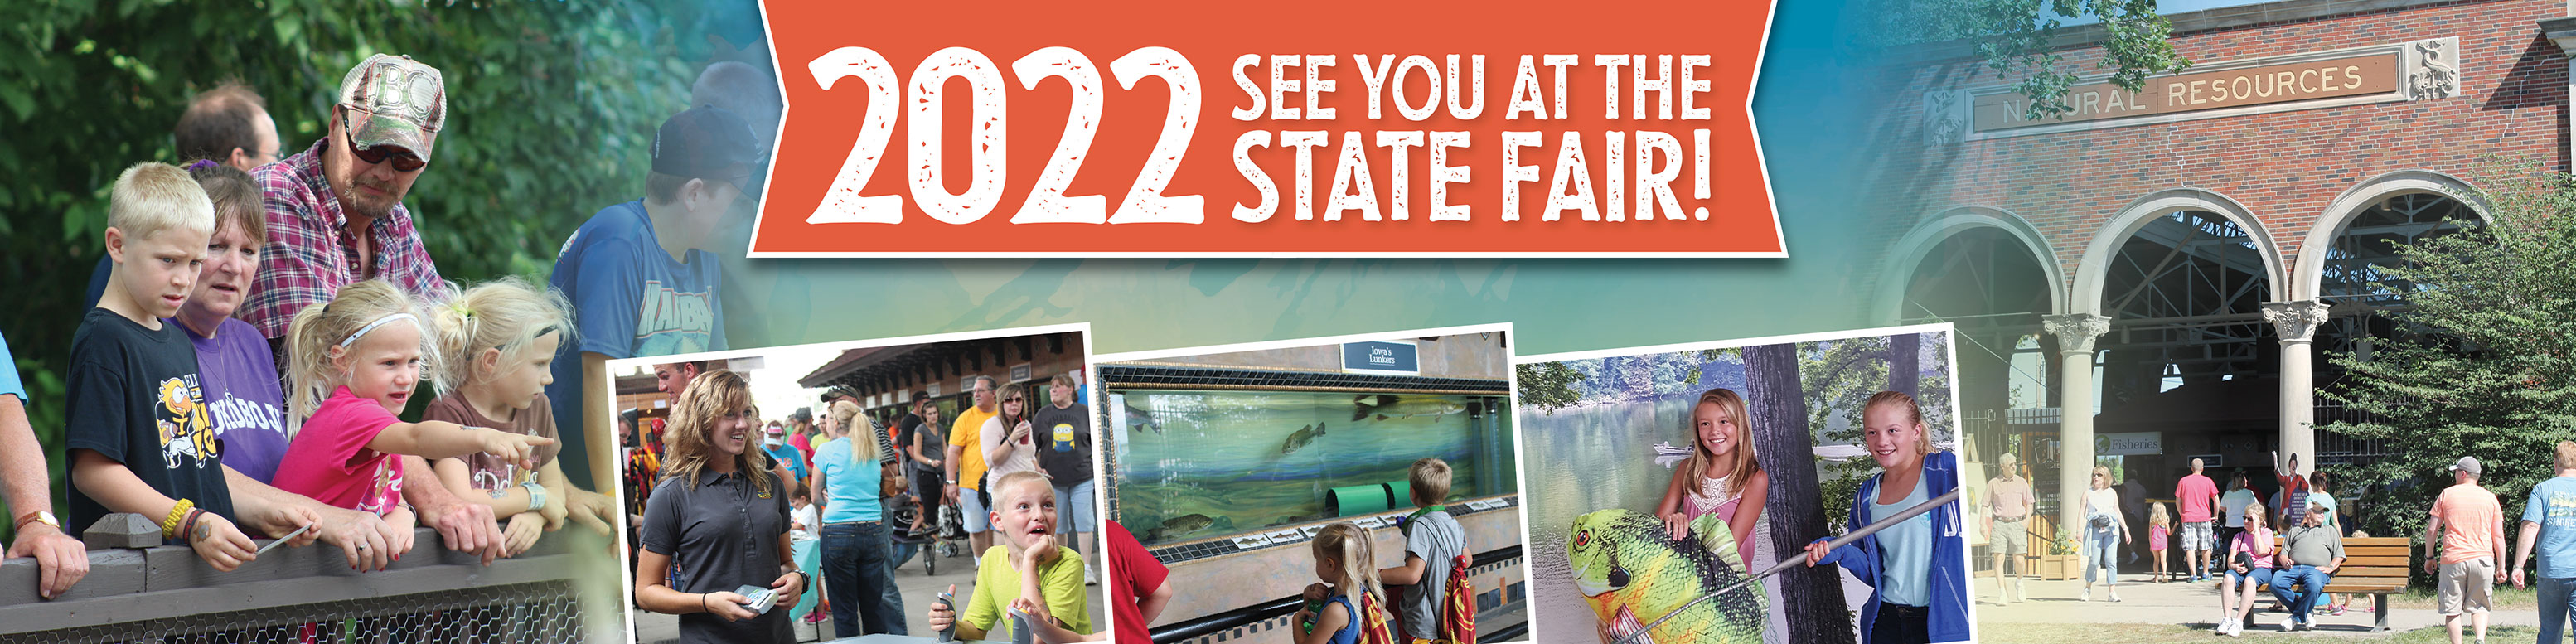 DNR 2022 state fair